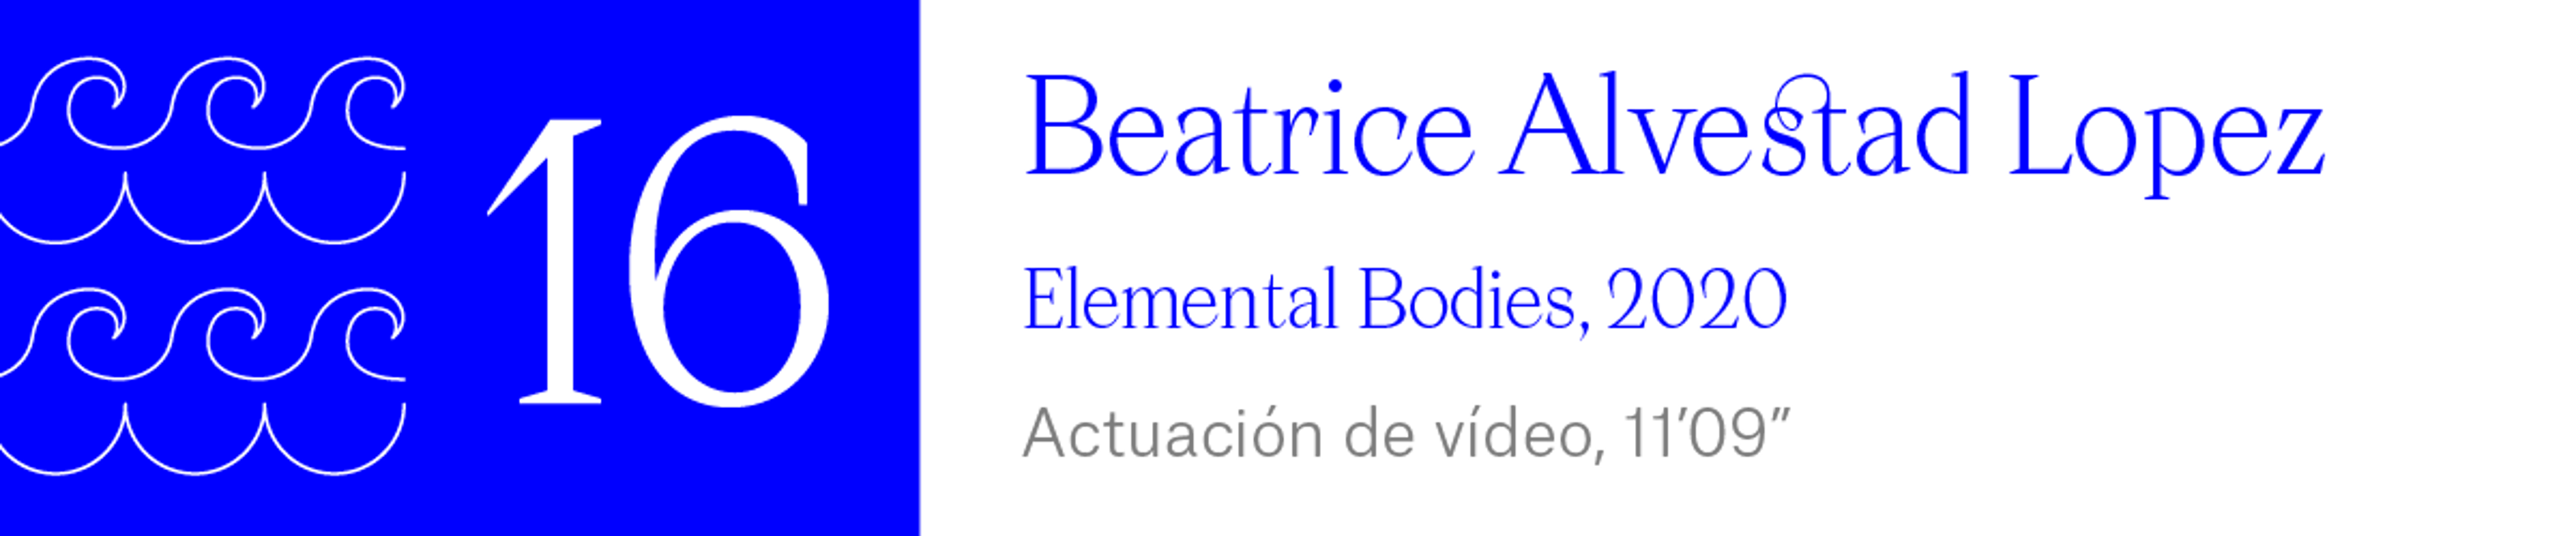 The Wave (16) Beatrice Alvestad Lopez - Elemental Bodies, 2020. Actuación de vídeo, 11’09”